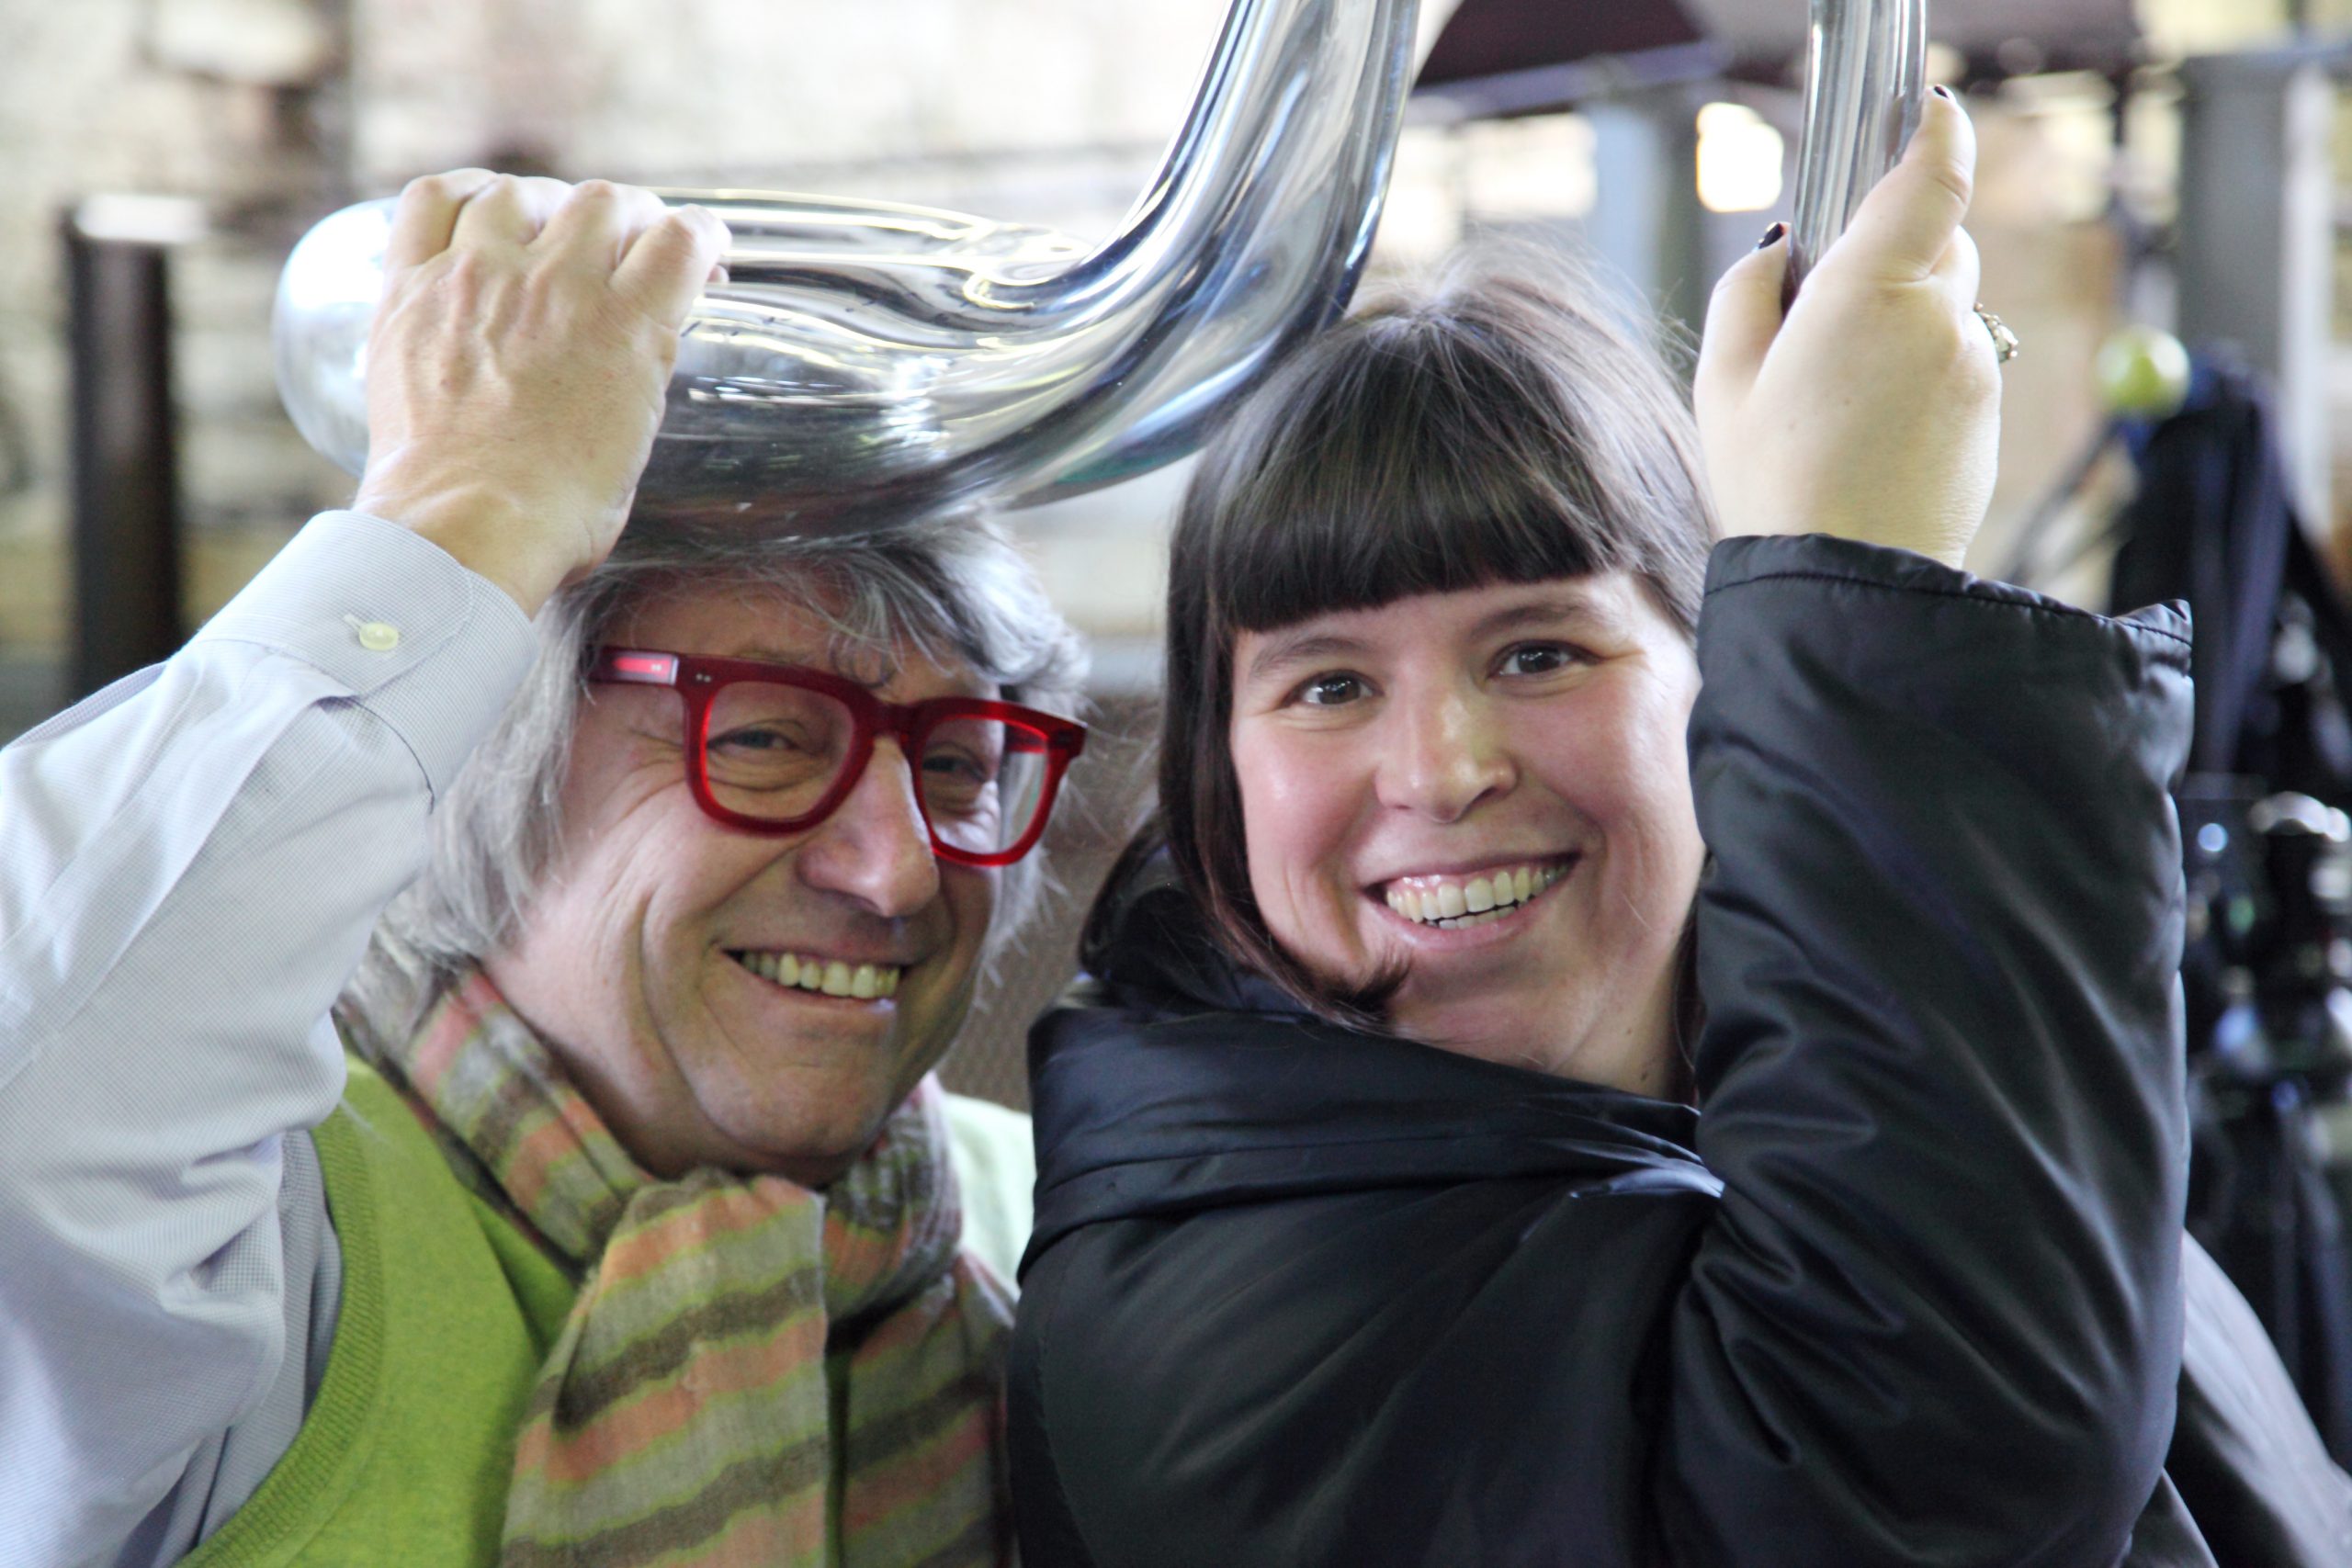 Adriano Berengo and Joana Vasconcelos at Glasstress 2013